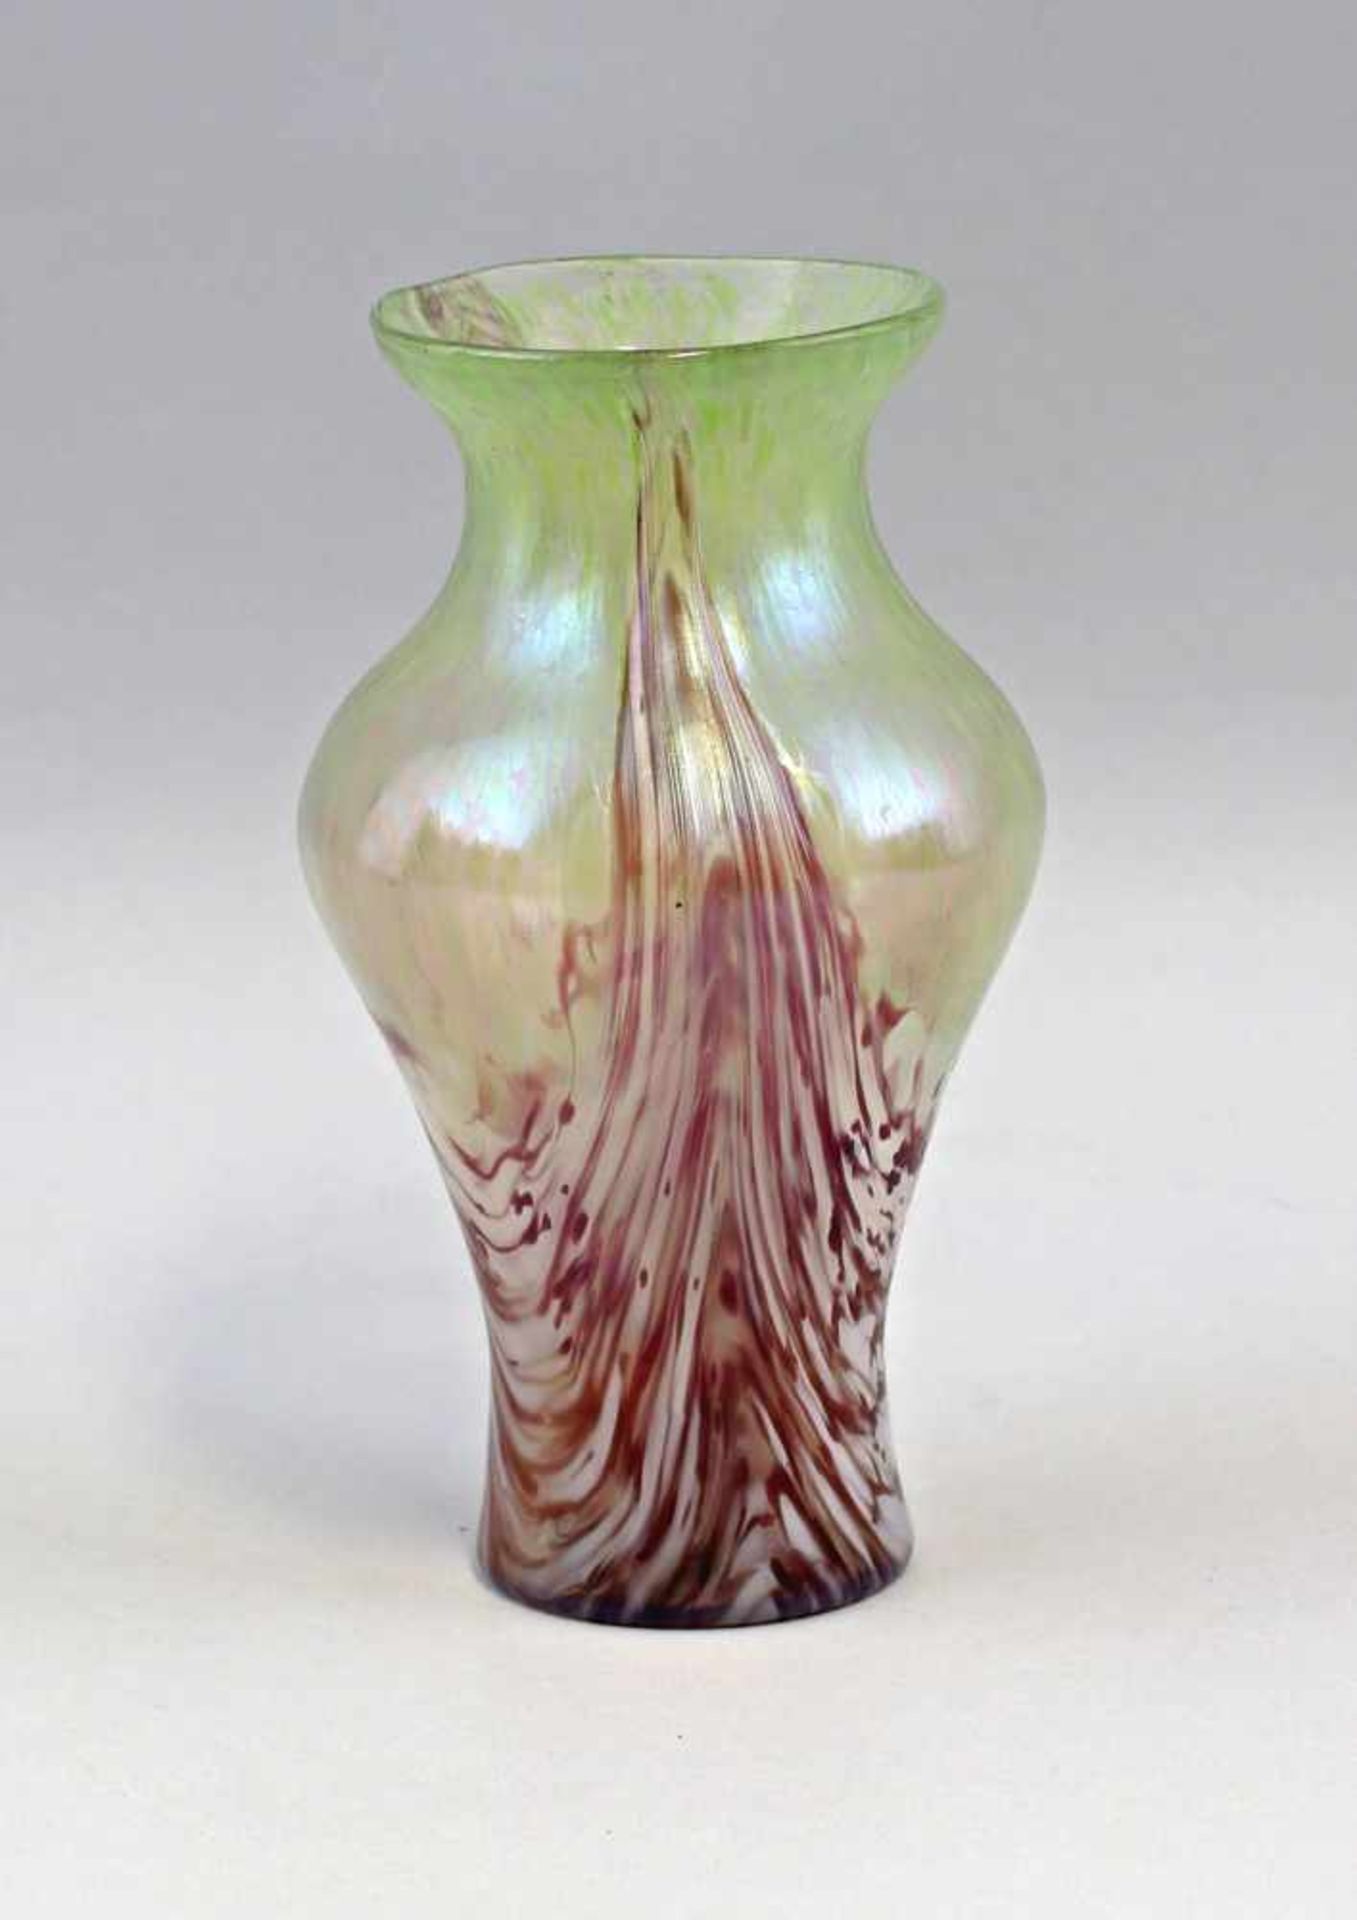 Vase Jugendstil Böhmenum 1900, farbloses Glas mit partiell eingearbeiteten hellgrünen Glaskröseln, - Image 3 of 4